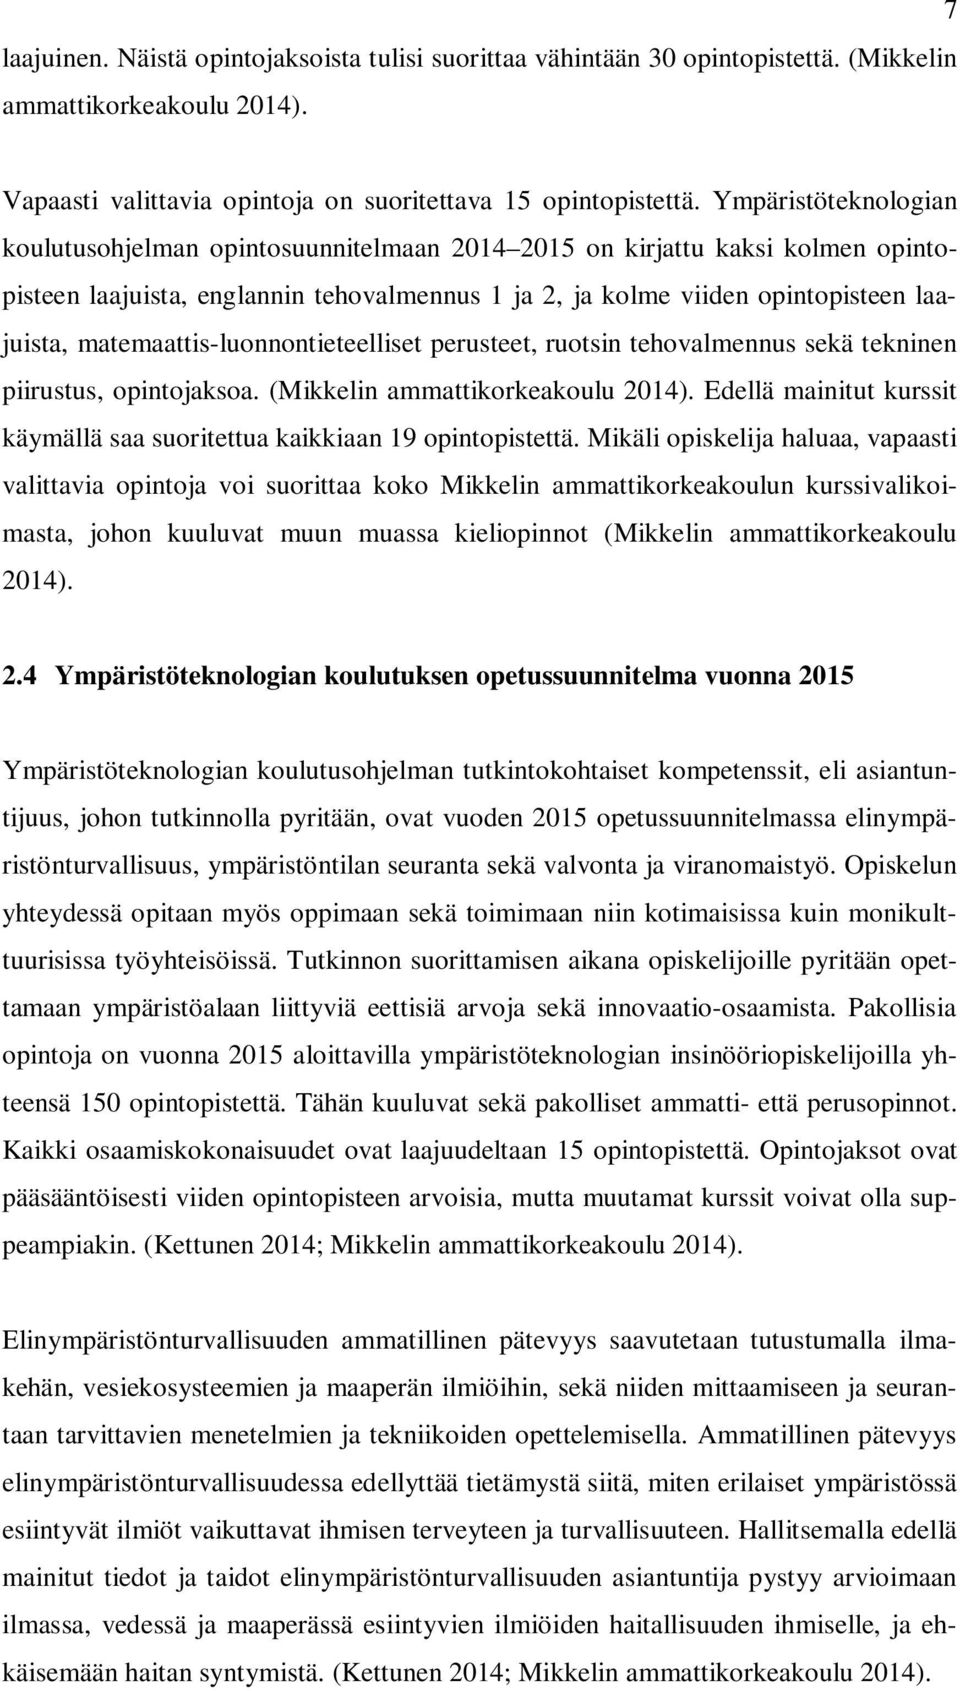 matemaattis-luonnontieteelliset perusteet, ruotsin tehovalmennus sekä tekninen piirustus, opintojaksoa. (Mikkelin ammattikorkeakoulu 2014).